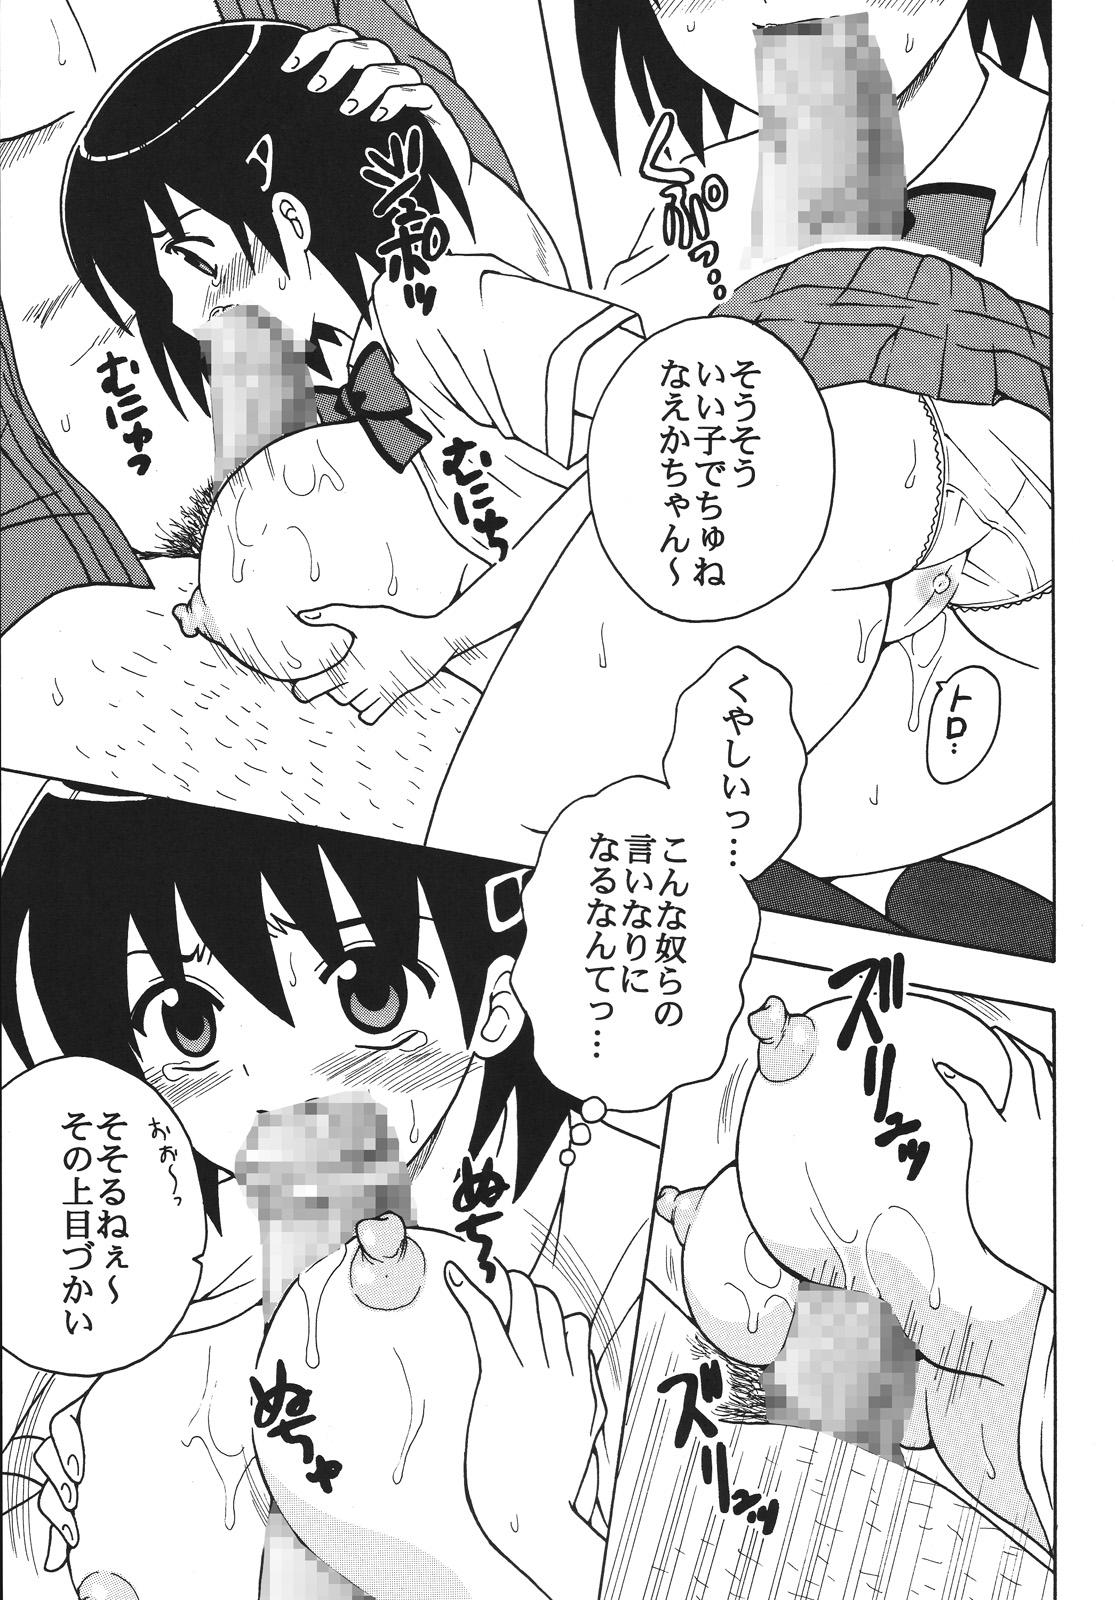 Porno Nakadashi Maid no Hinkaku 1 - Kamen no maid guy Hard Core Free Porn - Page 8